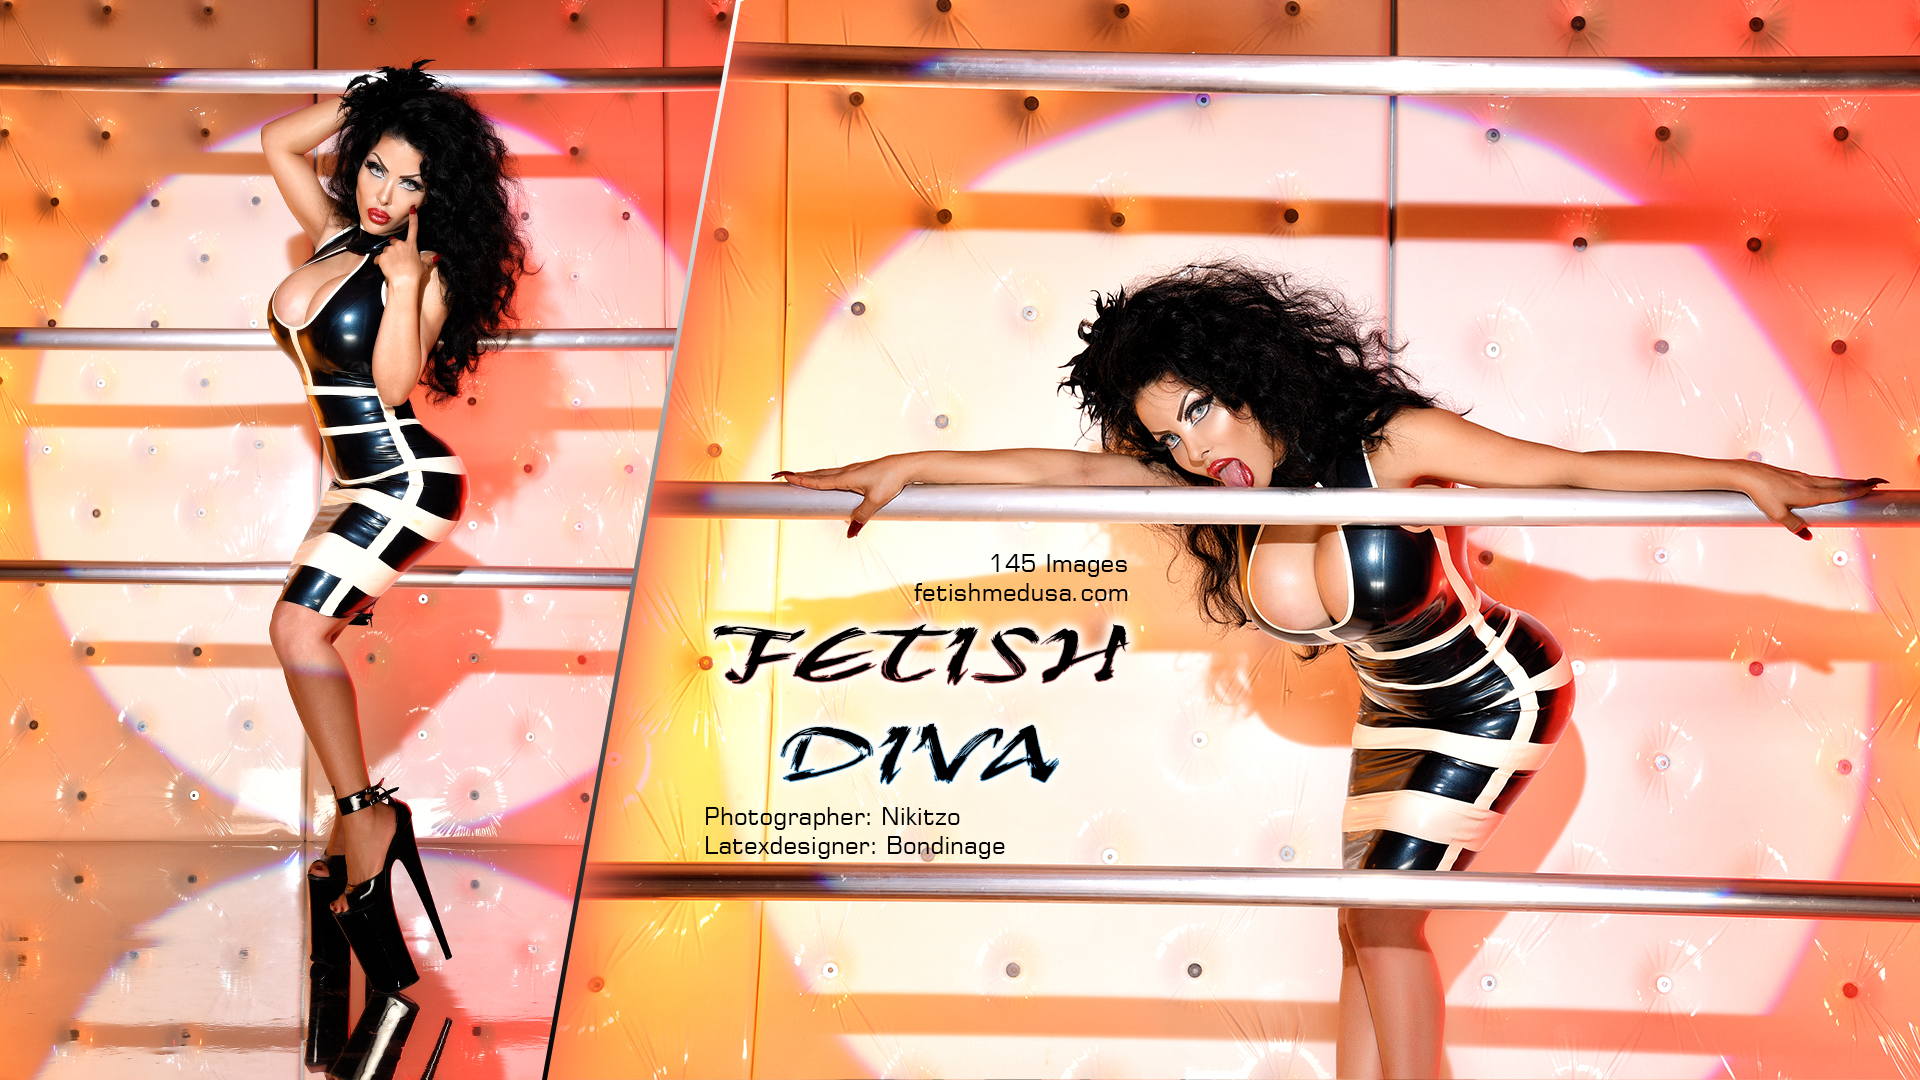 010 - Fetish Diva Cover 2.jpg